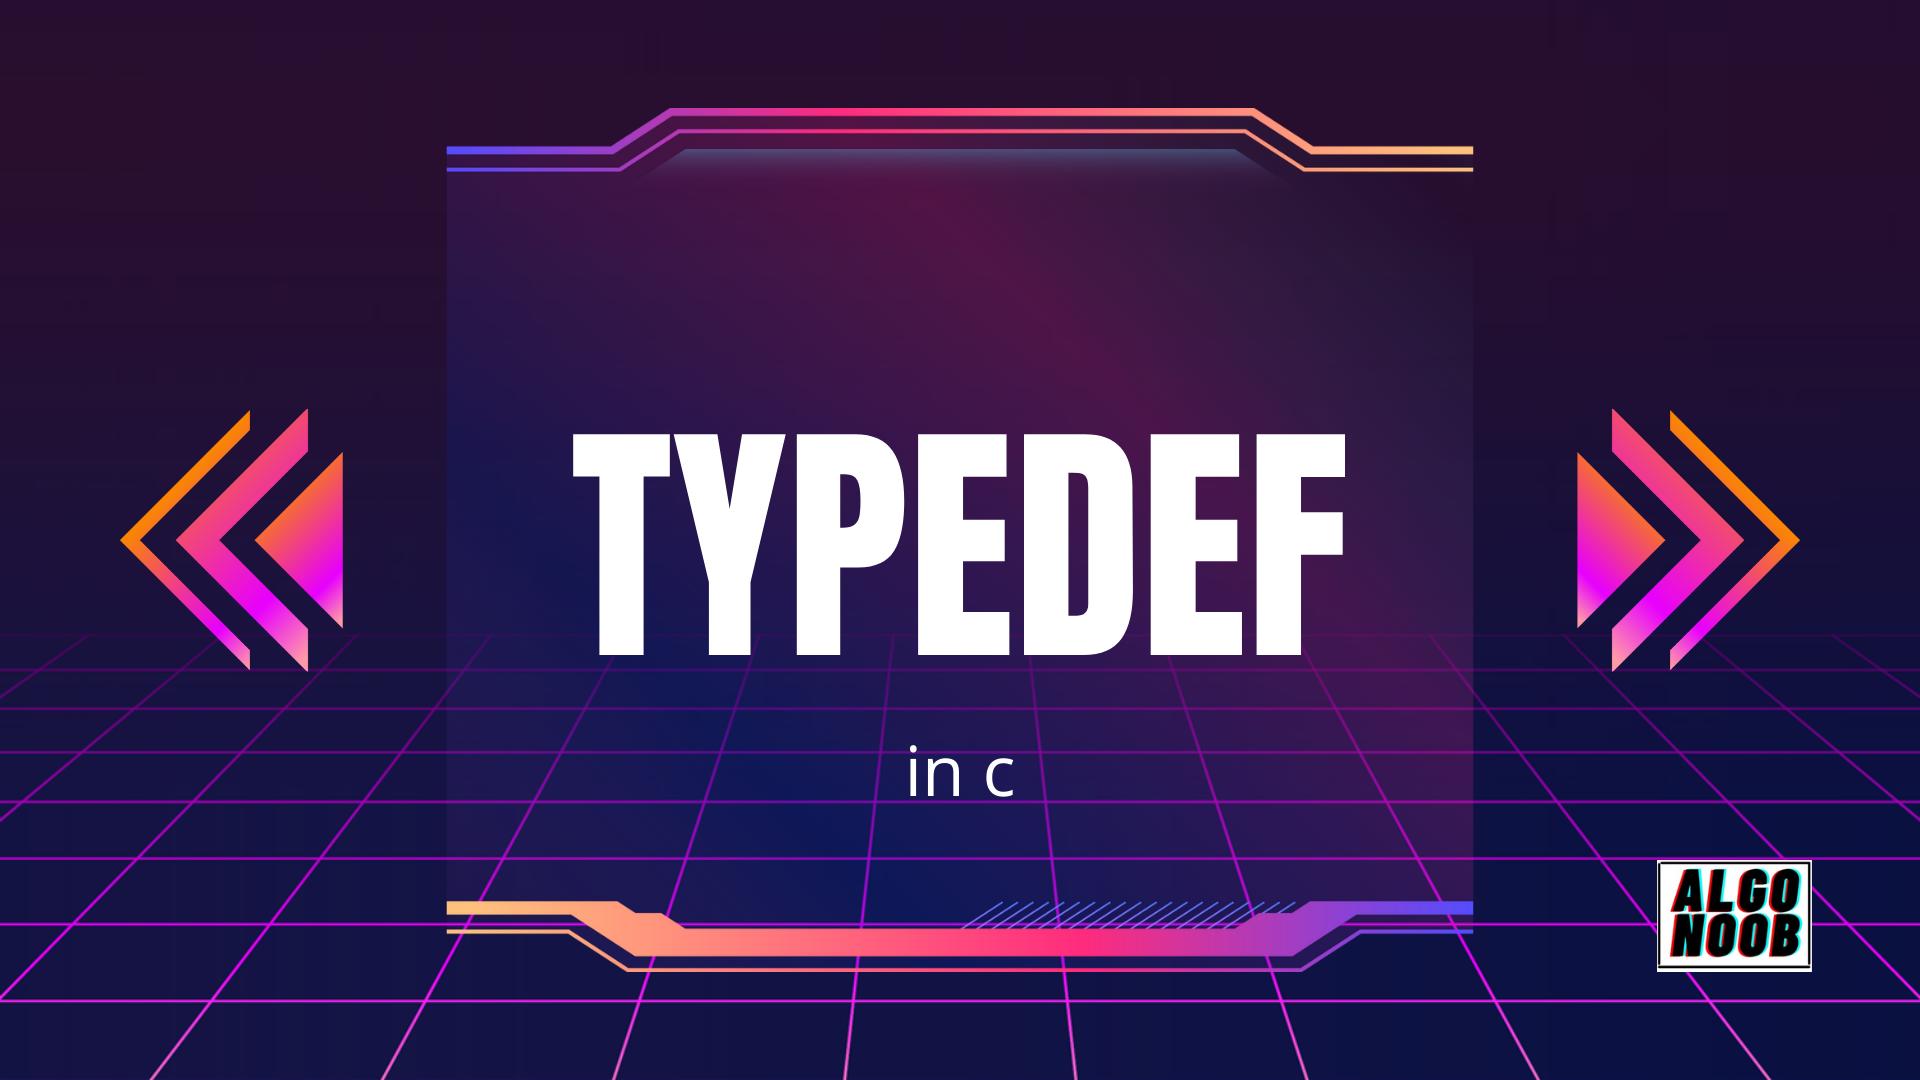 Typedef in C